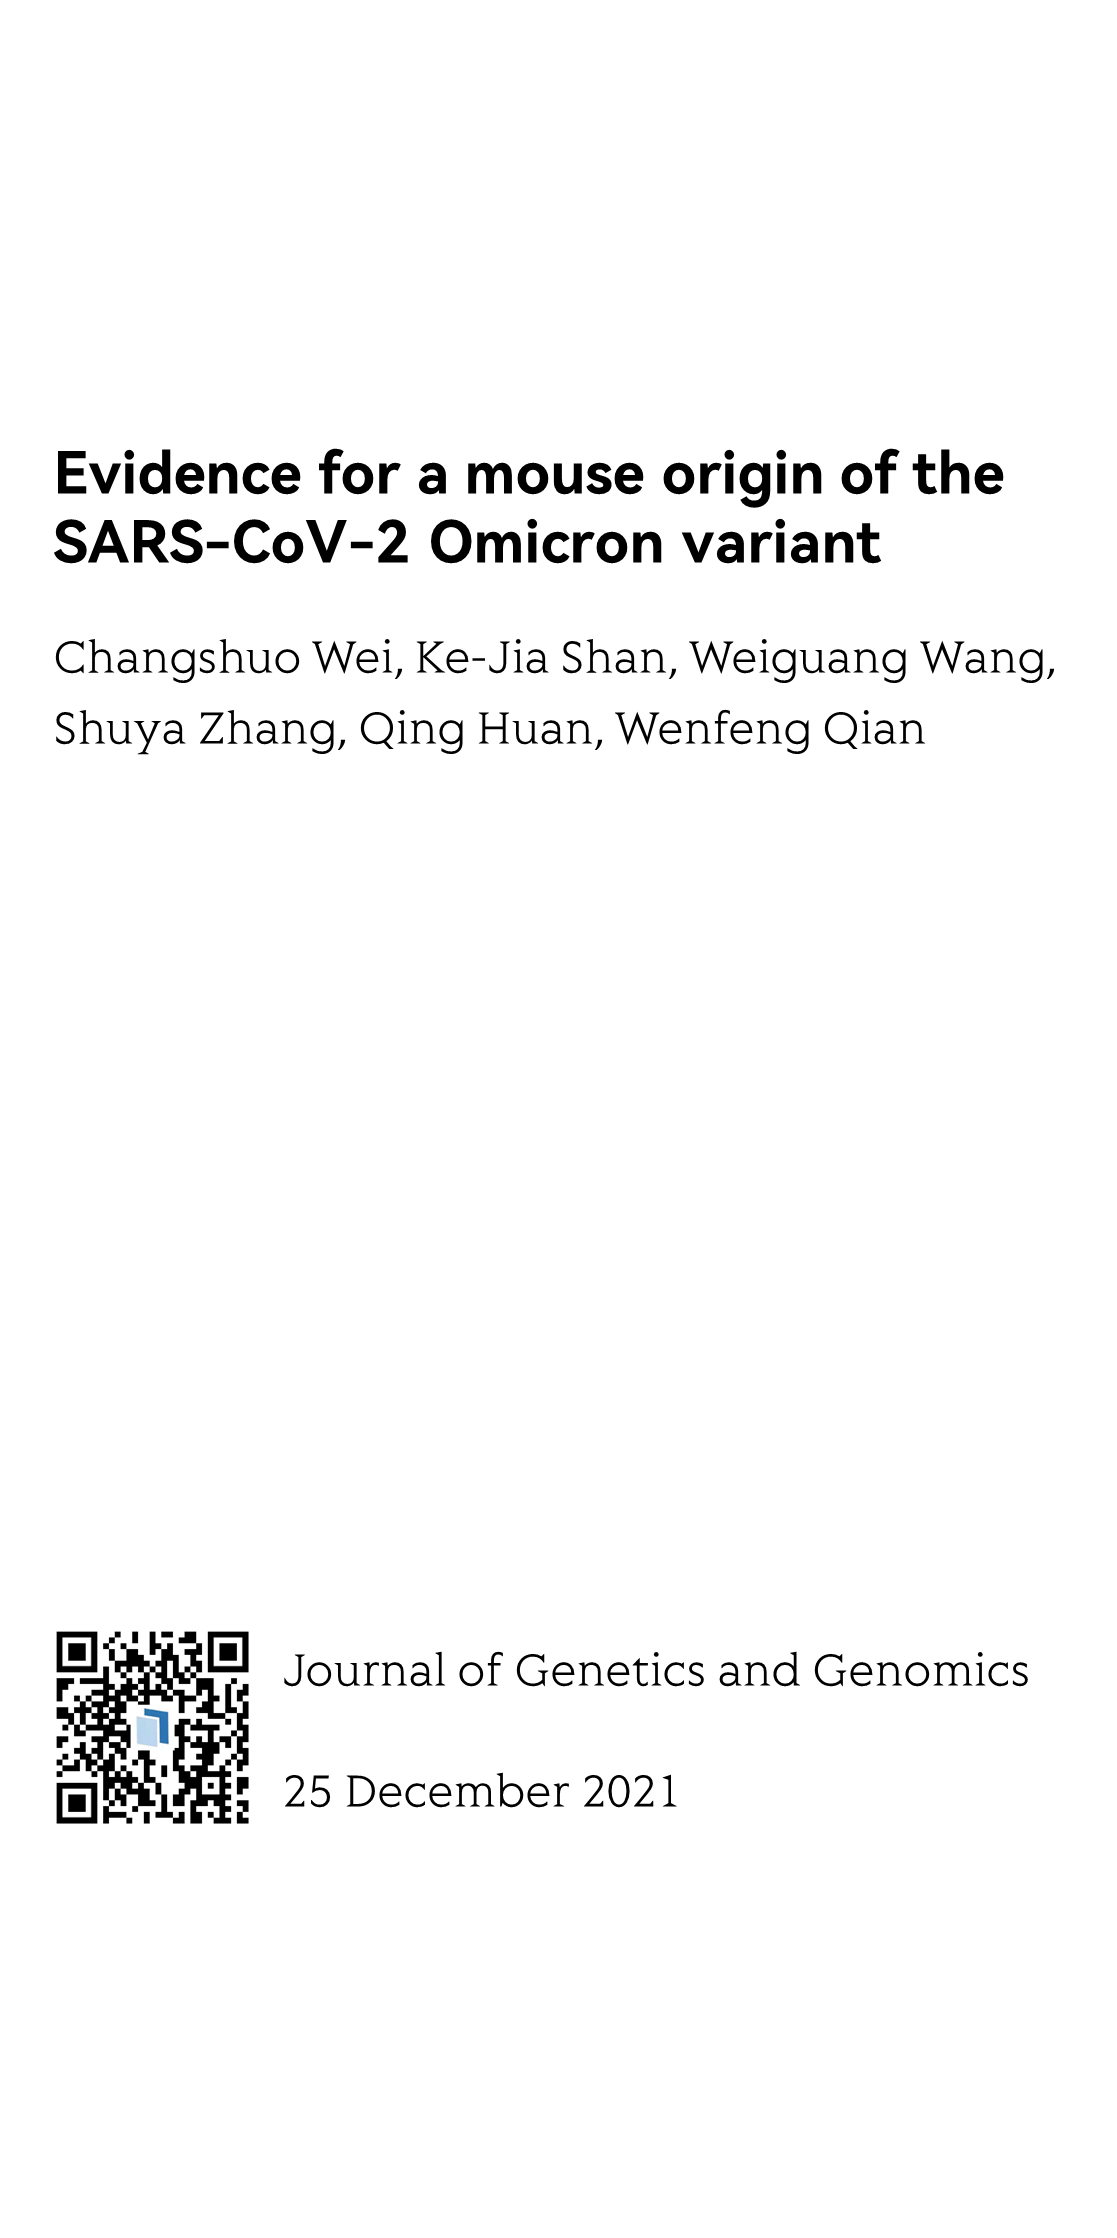 Journal of Genetics and Genomics_1